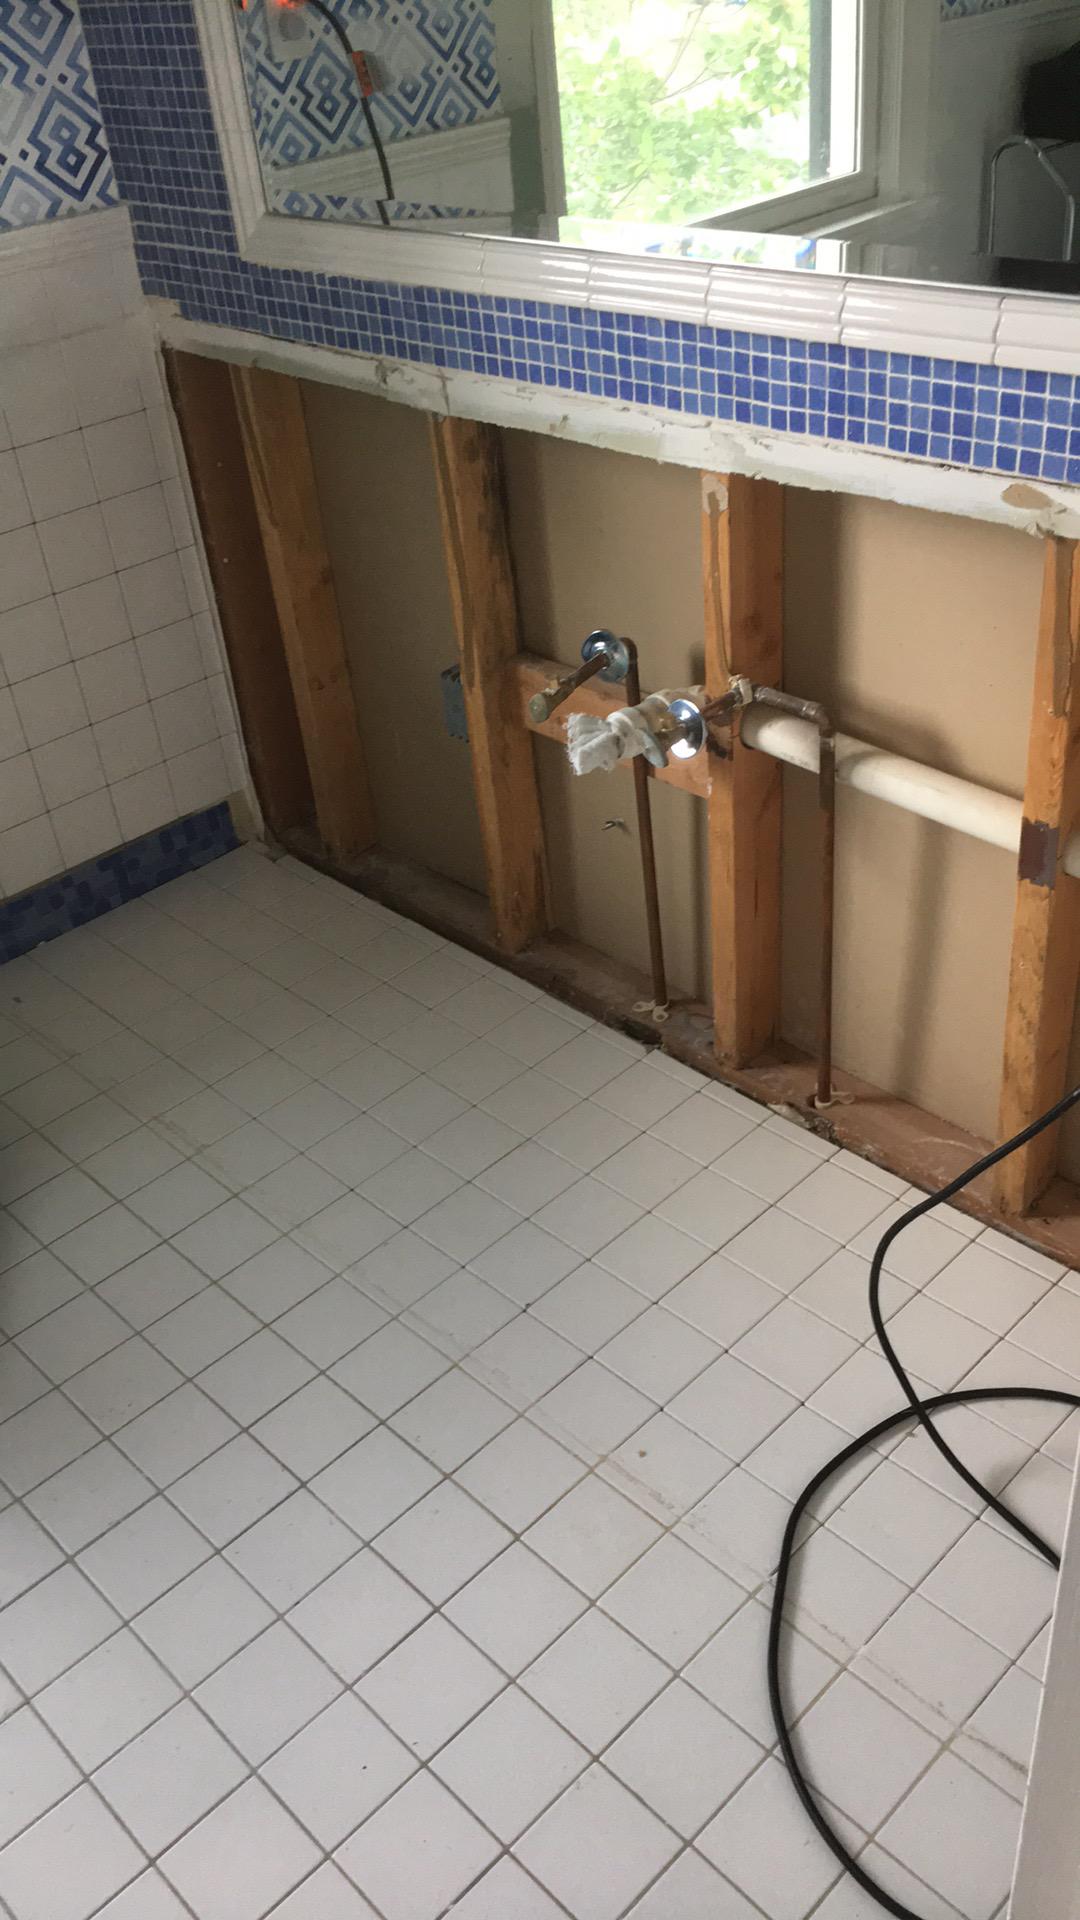 Removal of bathroom vanity